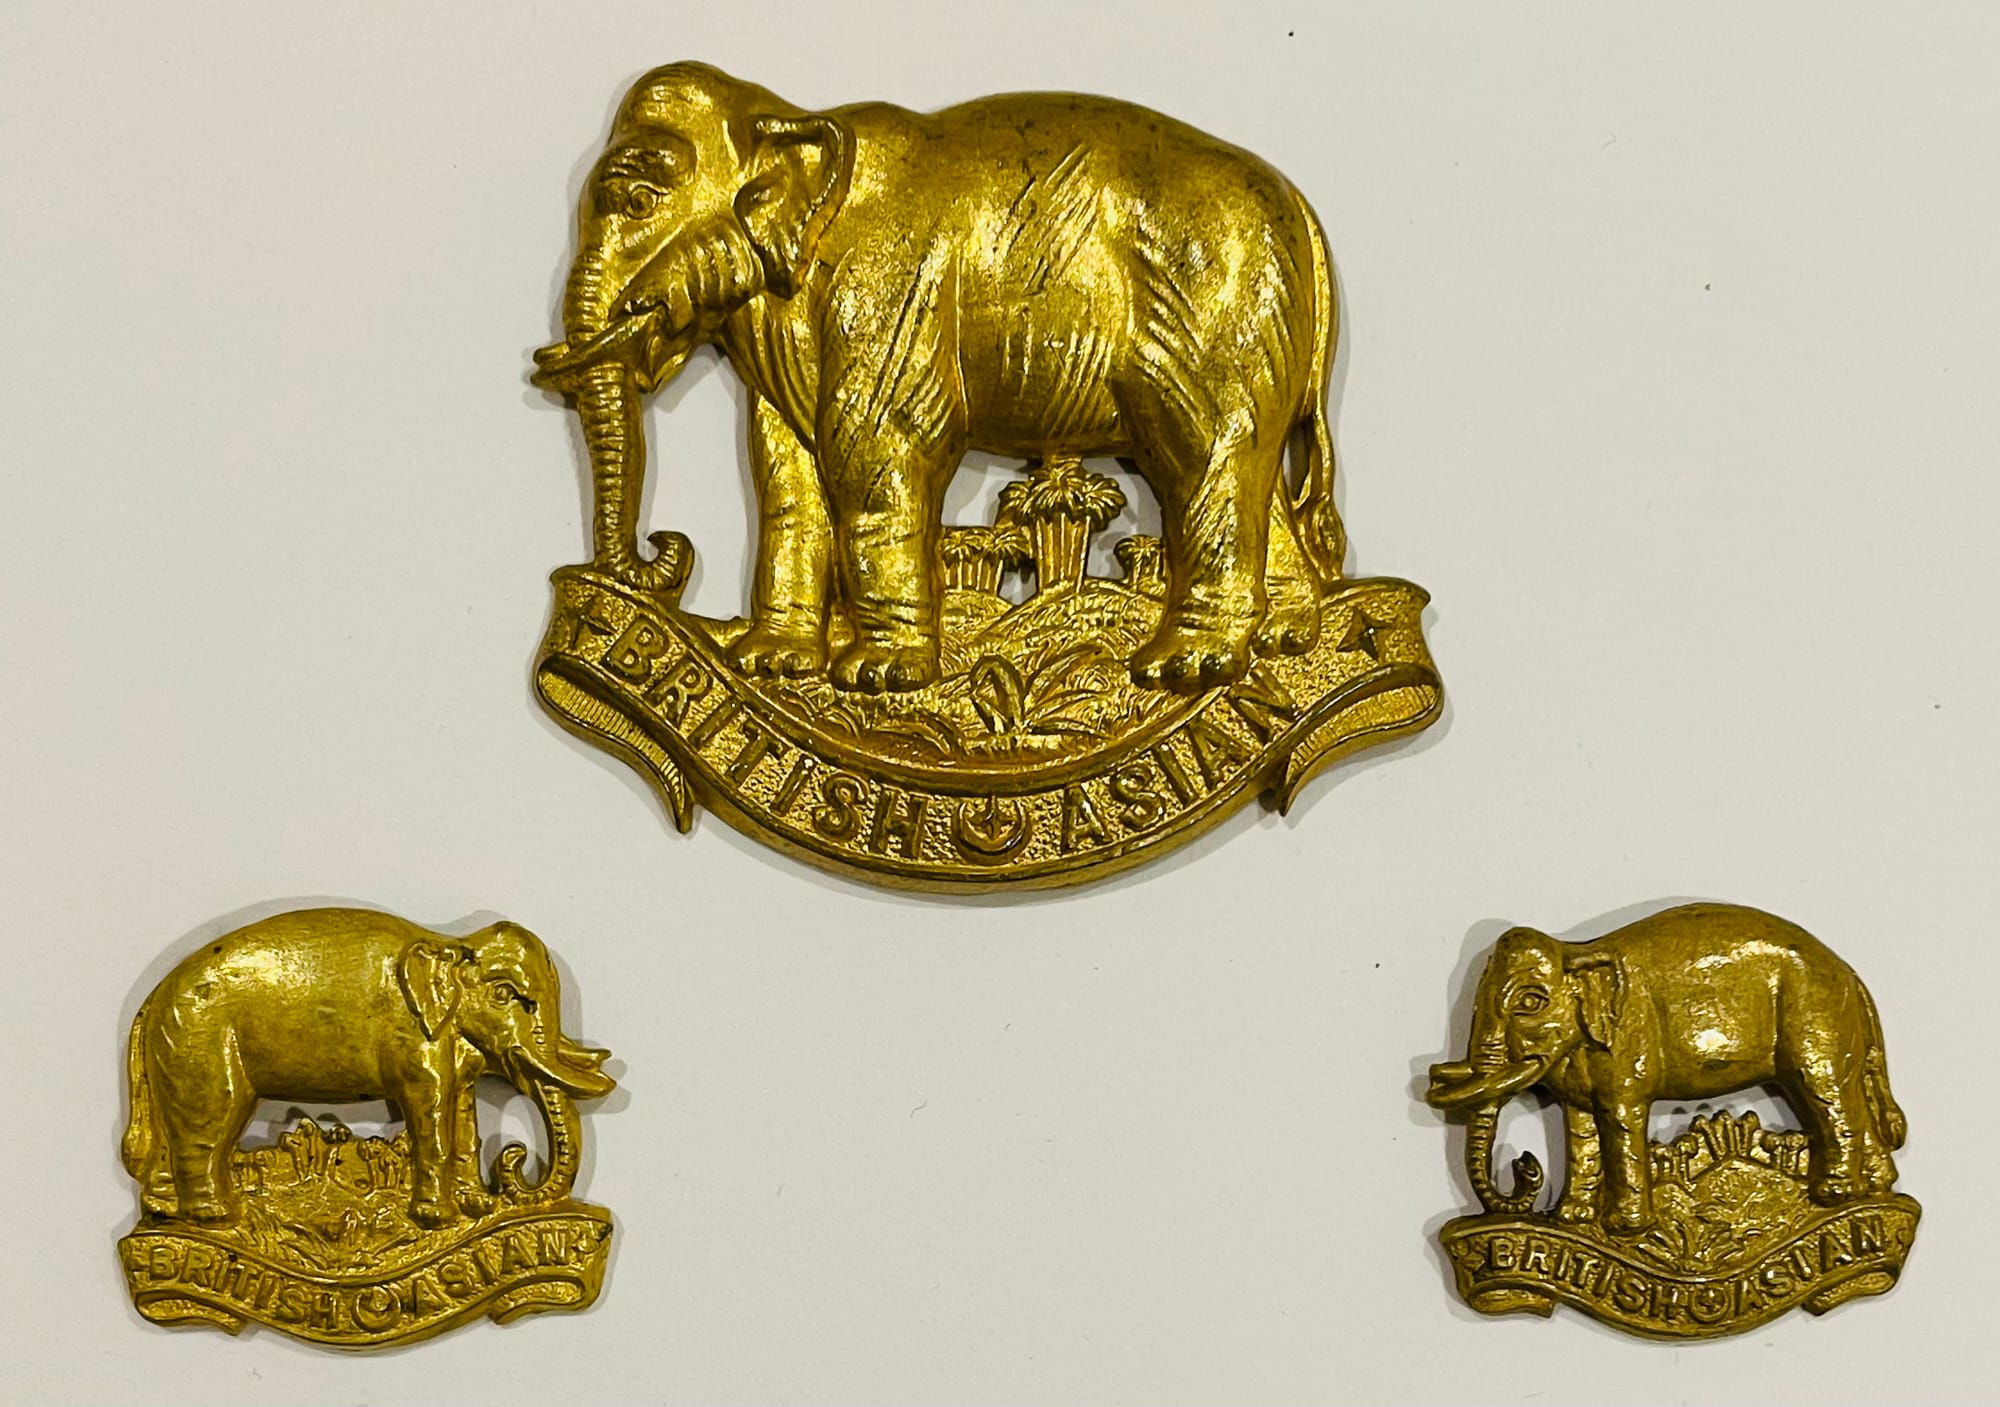 'A' British Asian Squadron